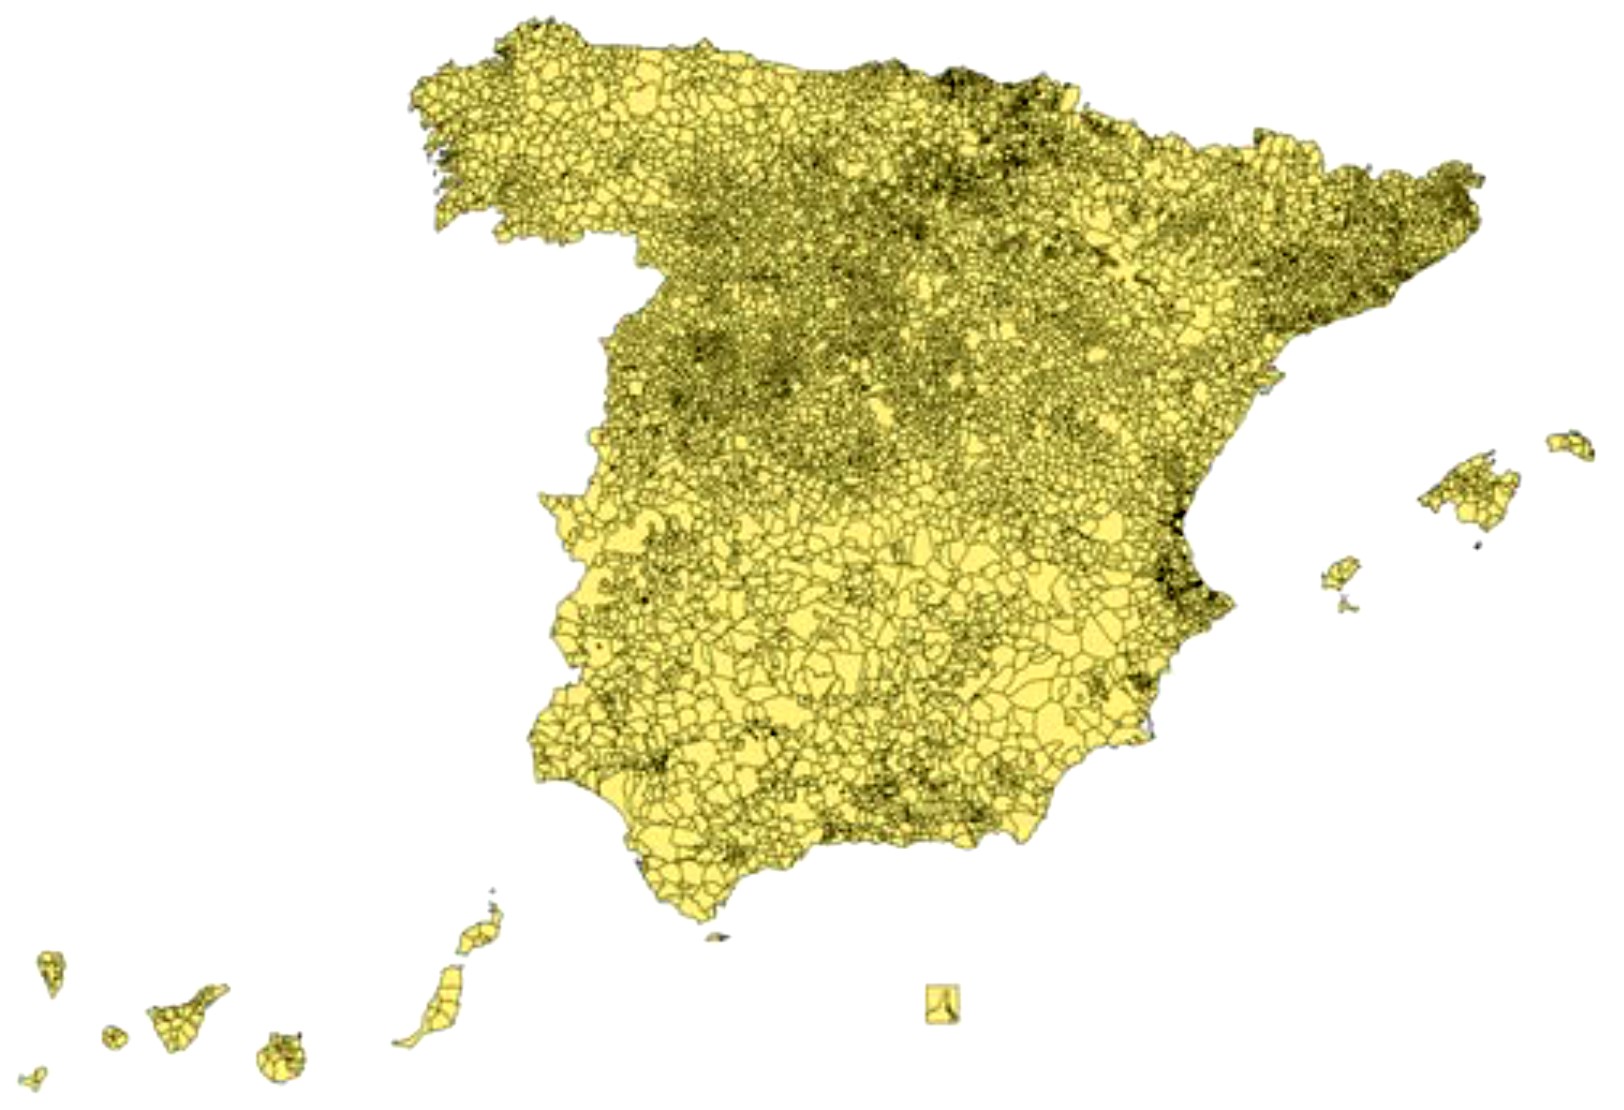 Munizipios Spanien municipios